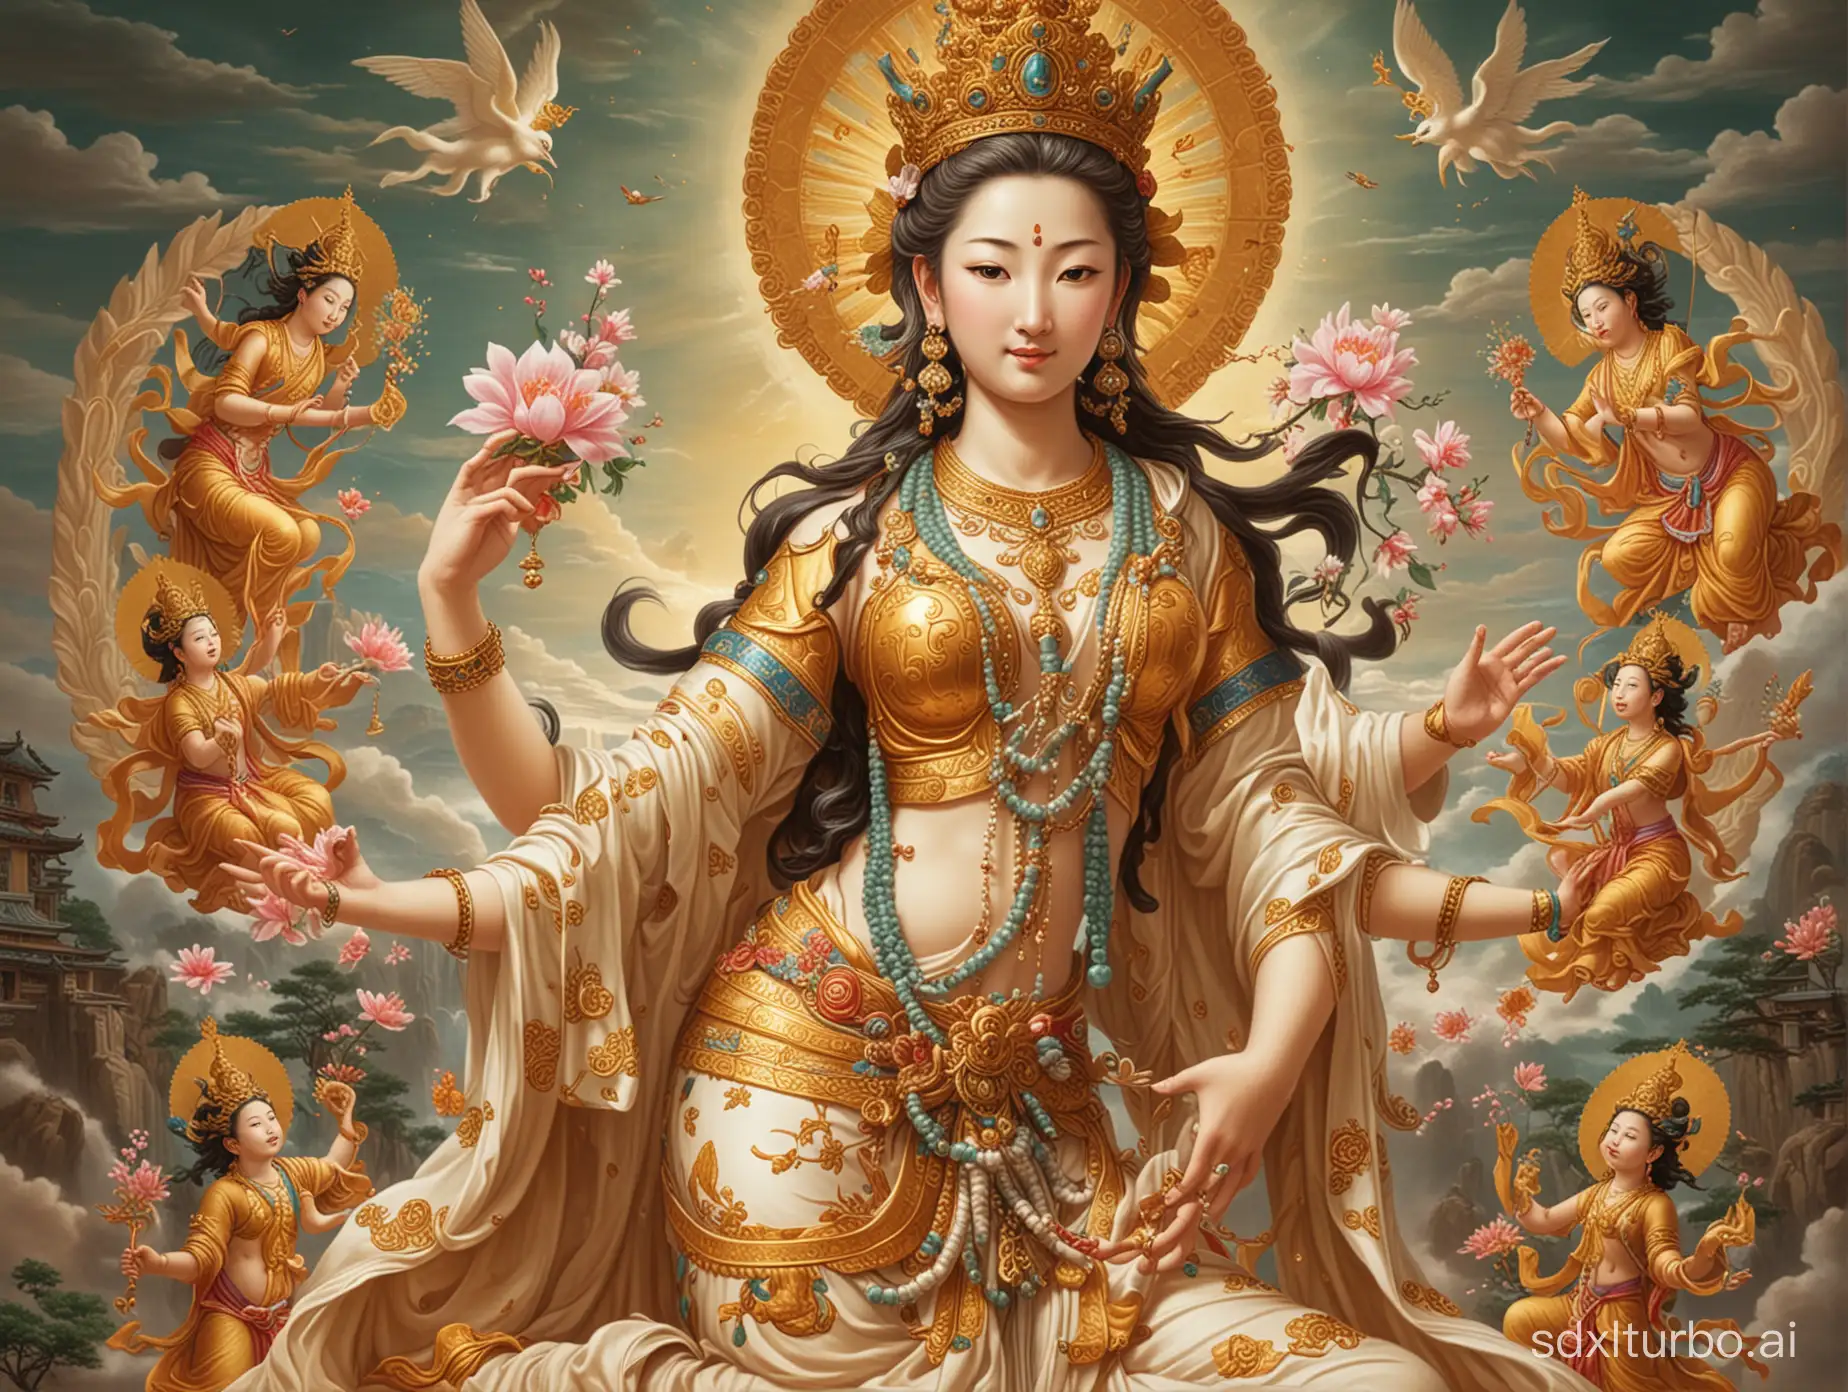 Bodhisattva-Avalokitesvara-Granting-Abundance-to-Children